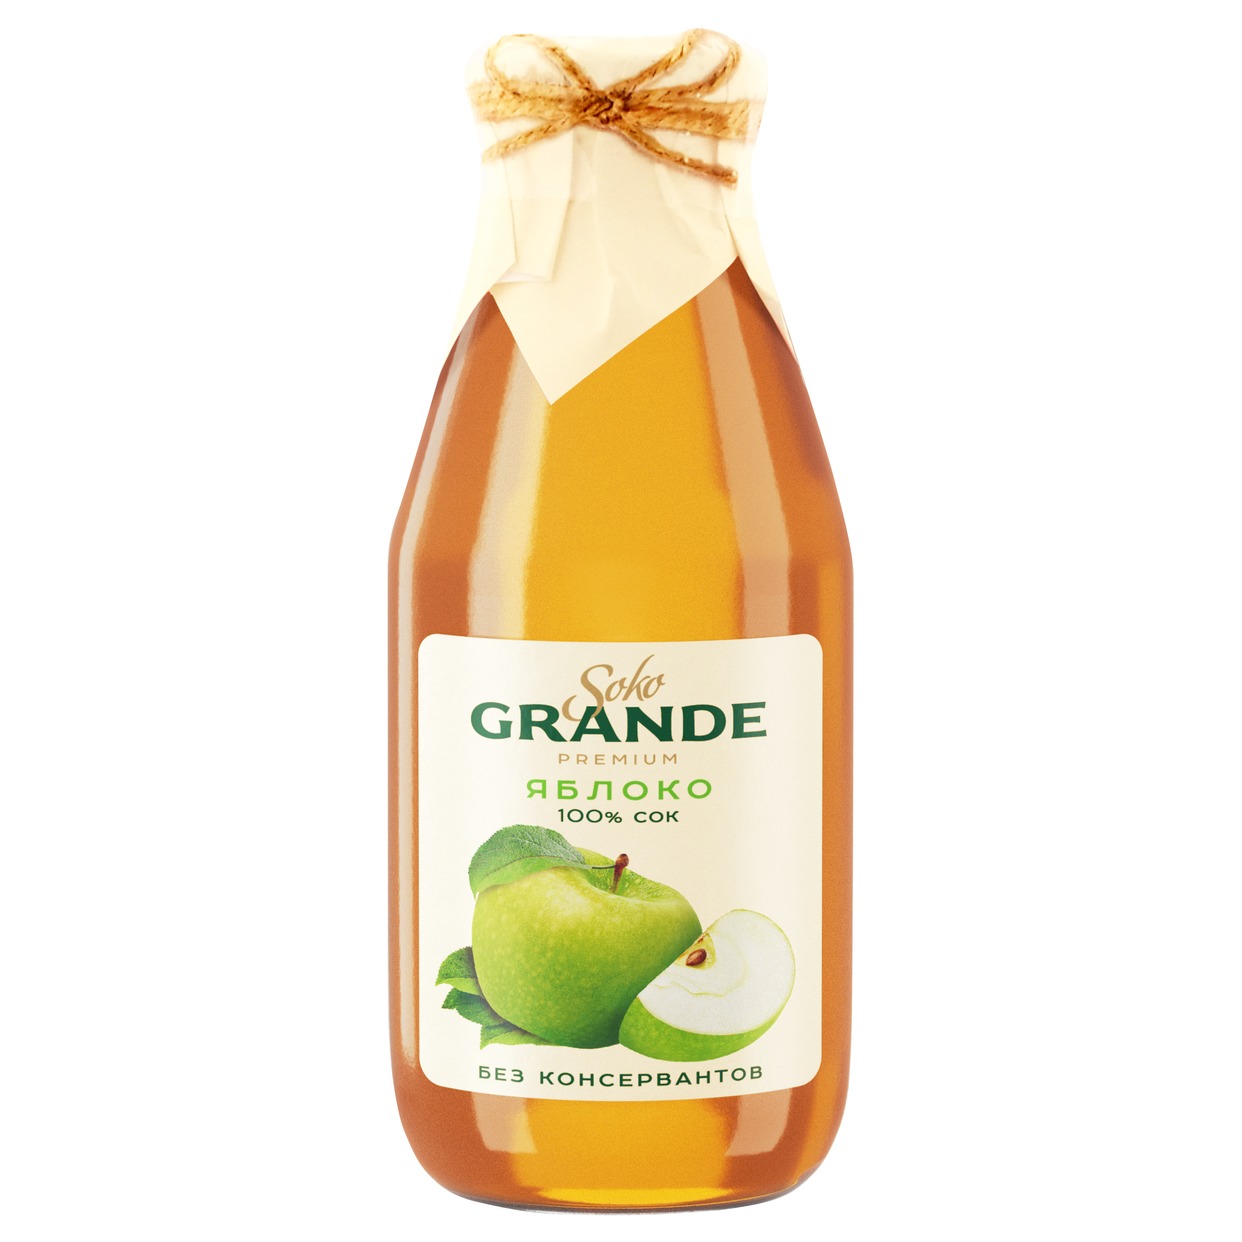 Soko Grande Сок яблочный восстановленный осветленный 0,3л